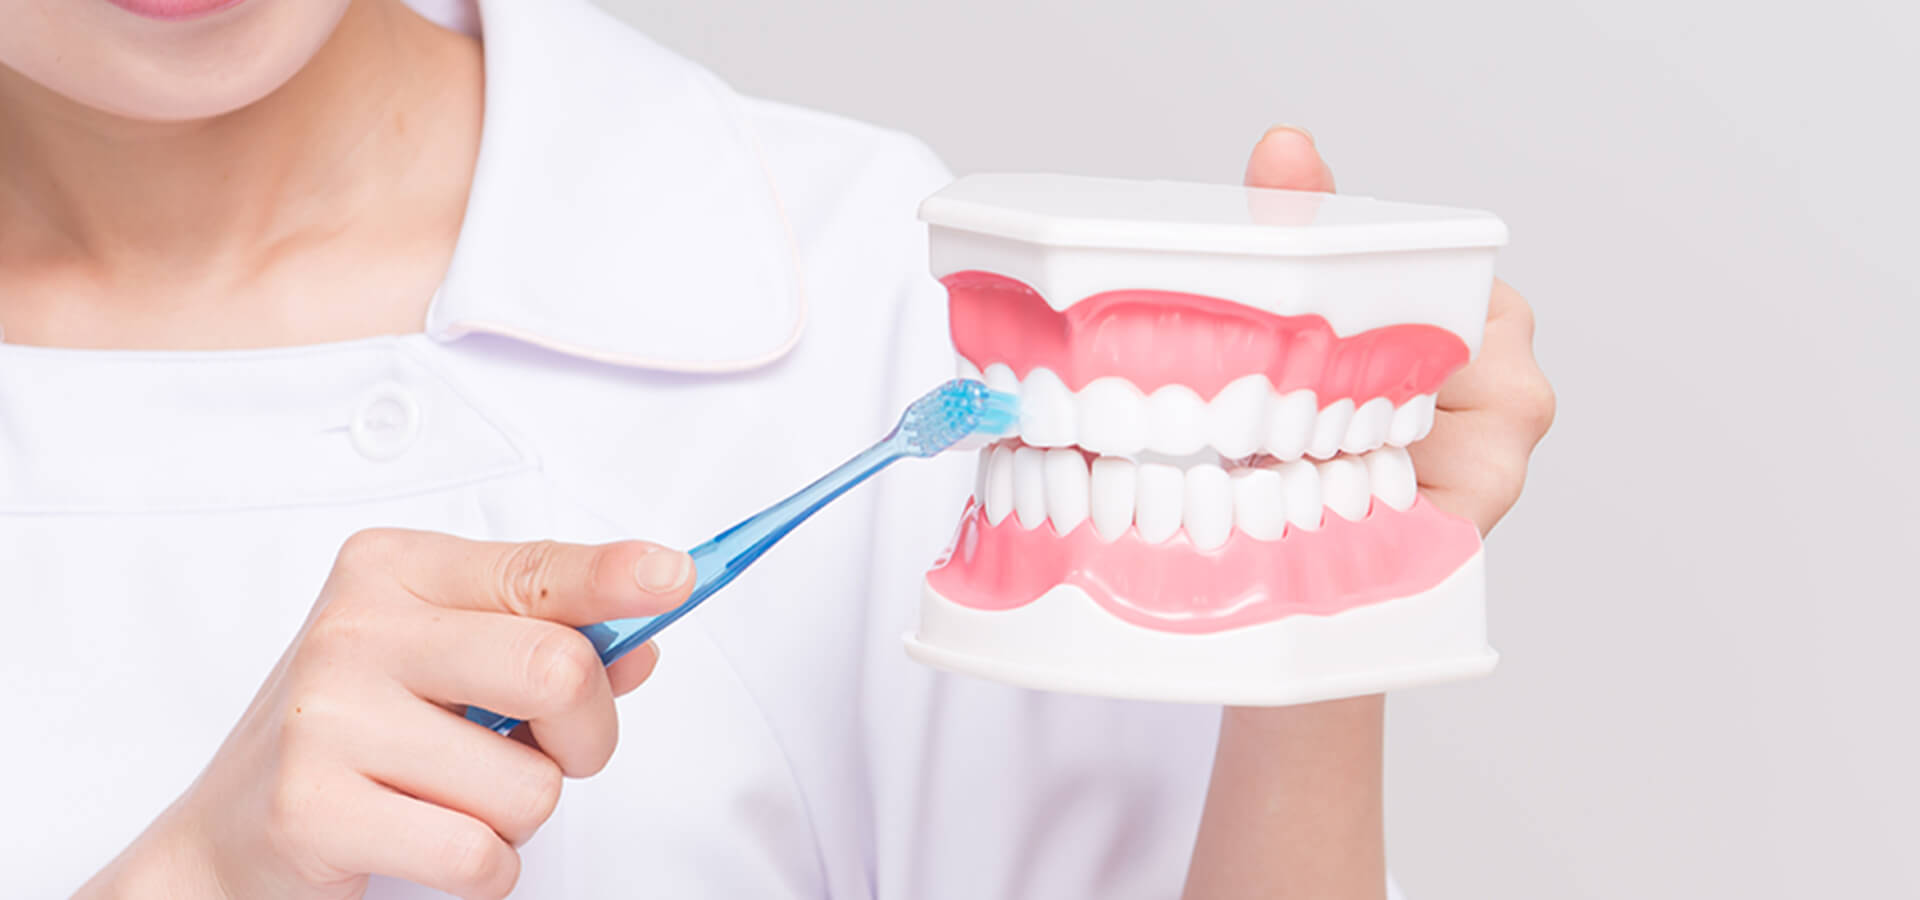 「虫歯のない健康な歯を」予防を大切にした治療